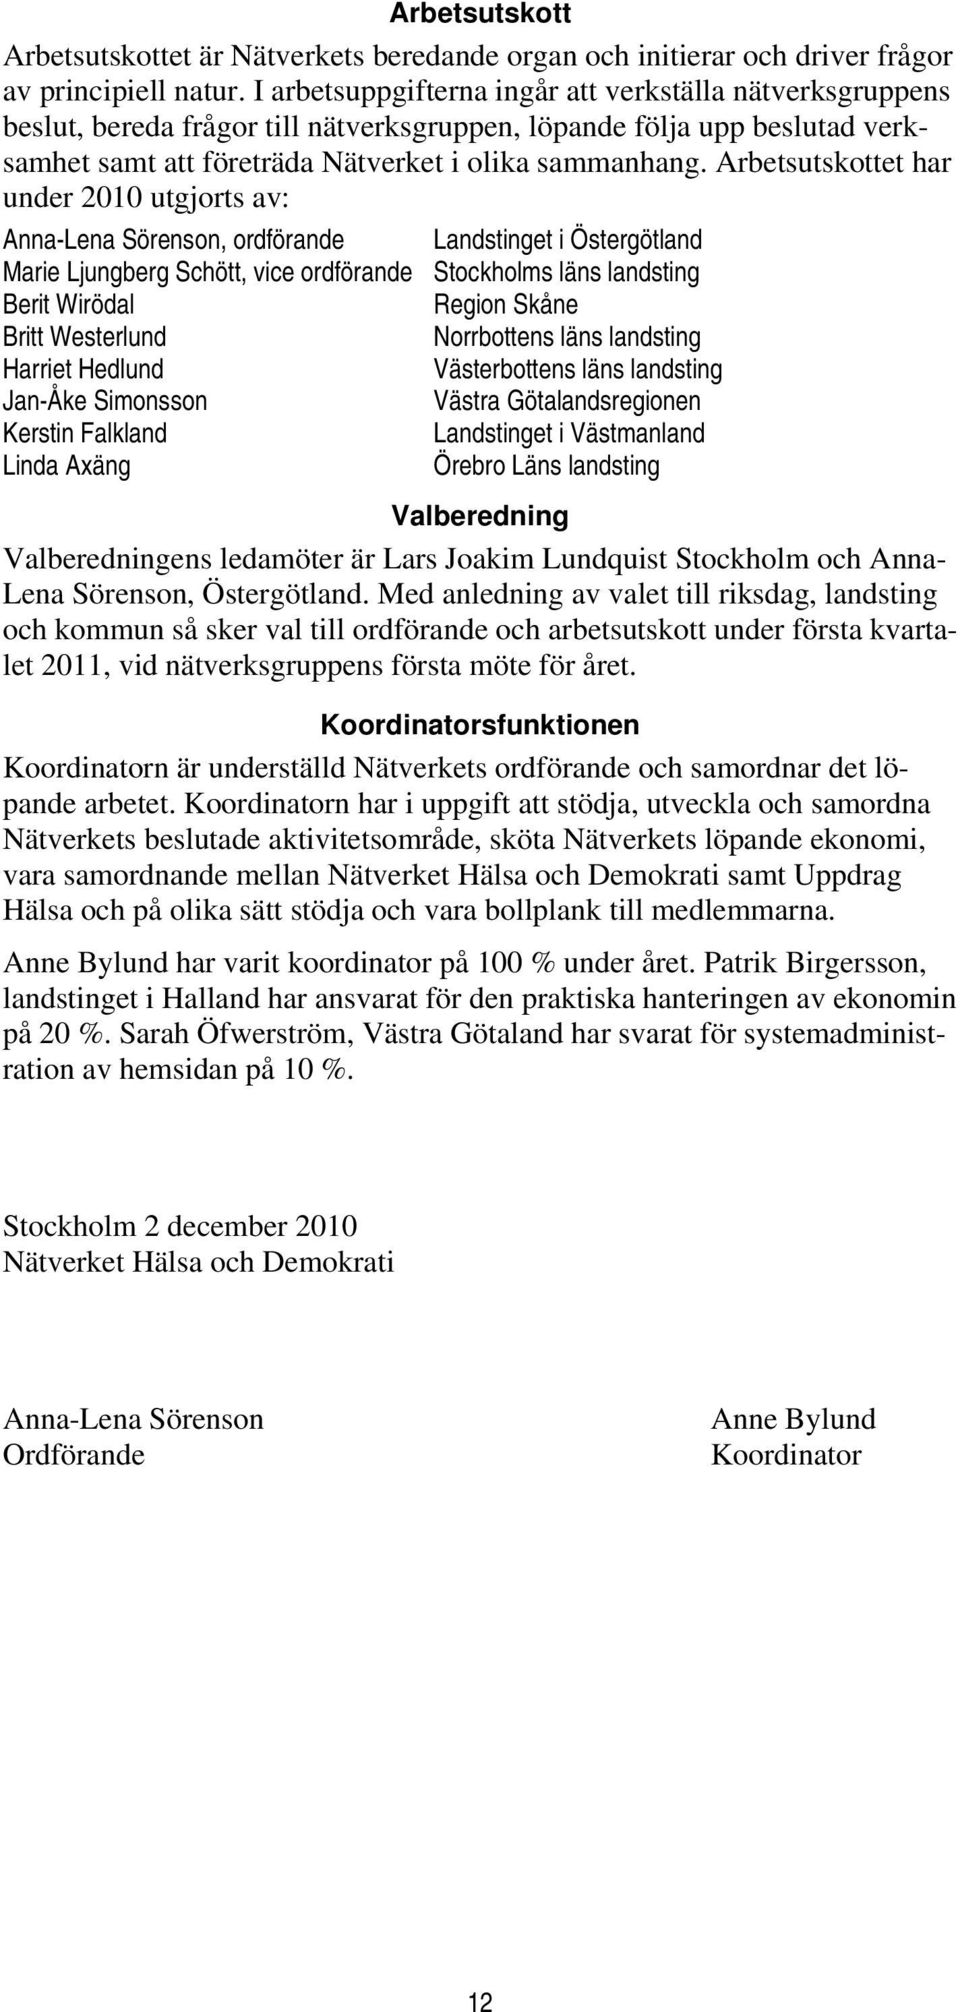 Arbetsutskottet har under 2010 utgjorts av: Anna-Lena Sörenson, ordförande Landstinget i Östergötland Marie Ljungberg Schött, vice ordförande Stockholms läns landsting Berit Wirödal Region Skåne